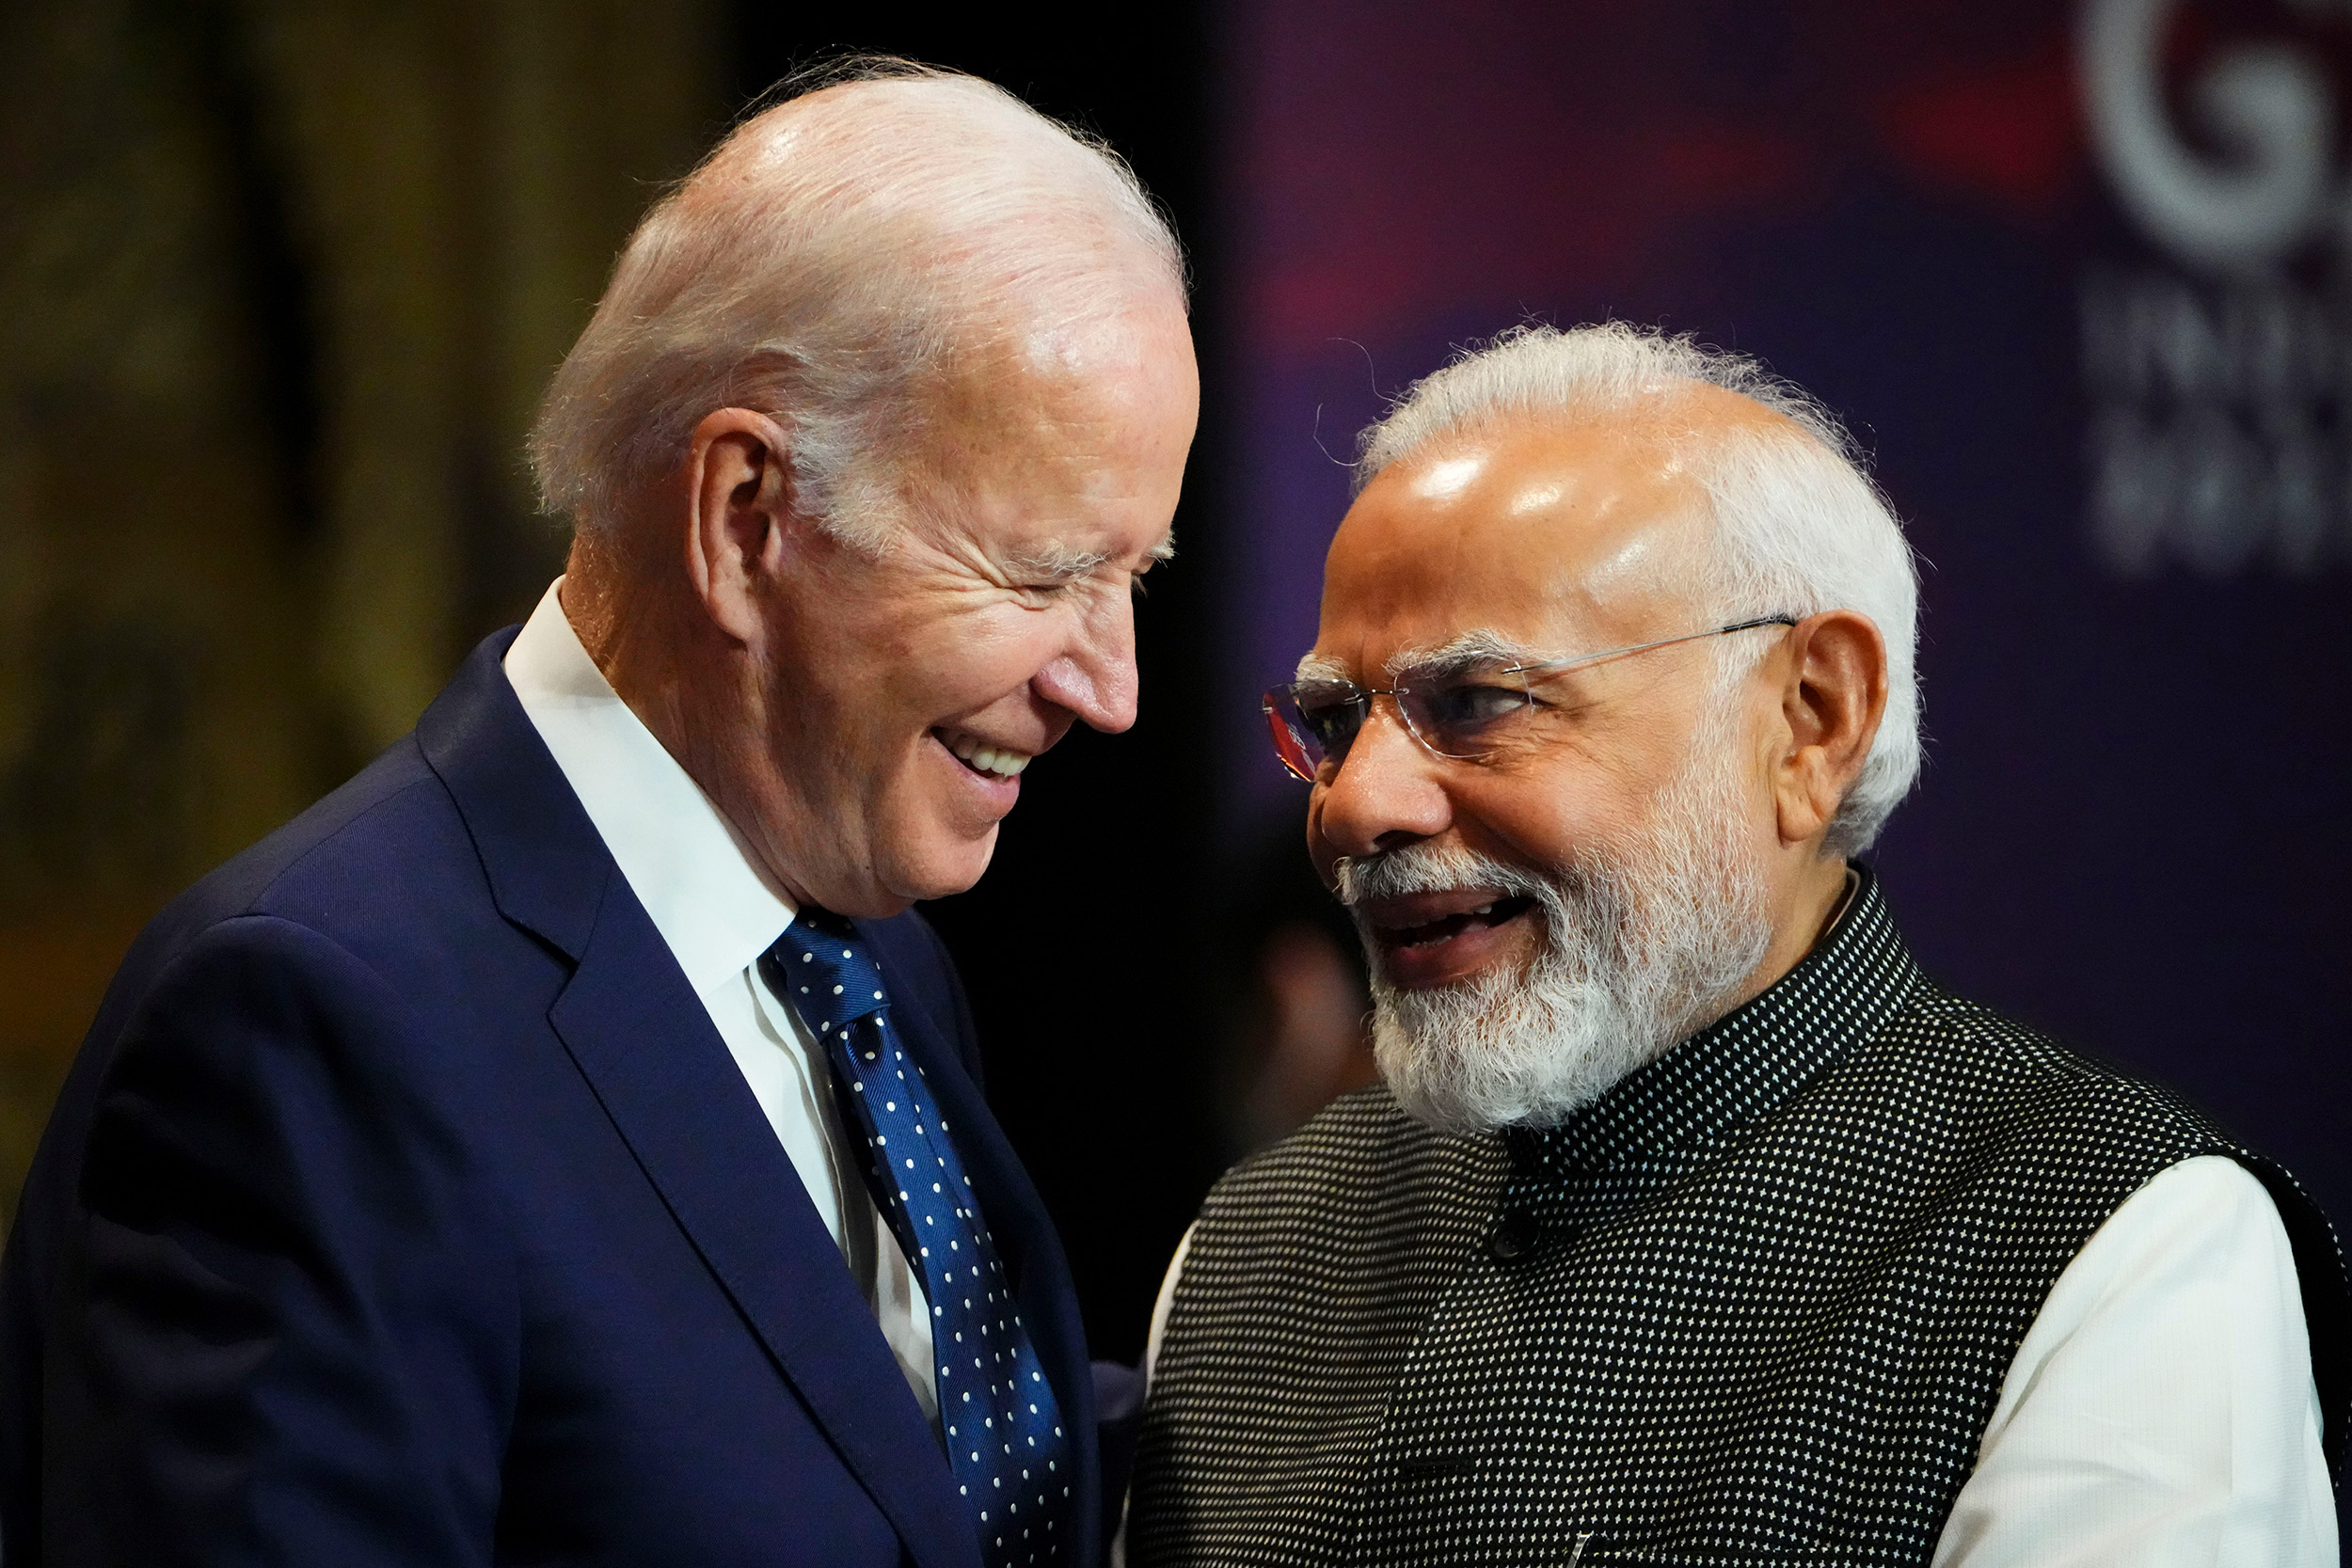 Οι ΗΠΑ εμβαθύνουν τη σχέση τους με την Ινδία ενόψει της επίσκεψης Μόντι στην Ουάσινγκτον τον Ιούνιο